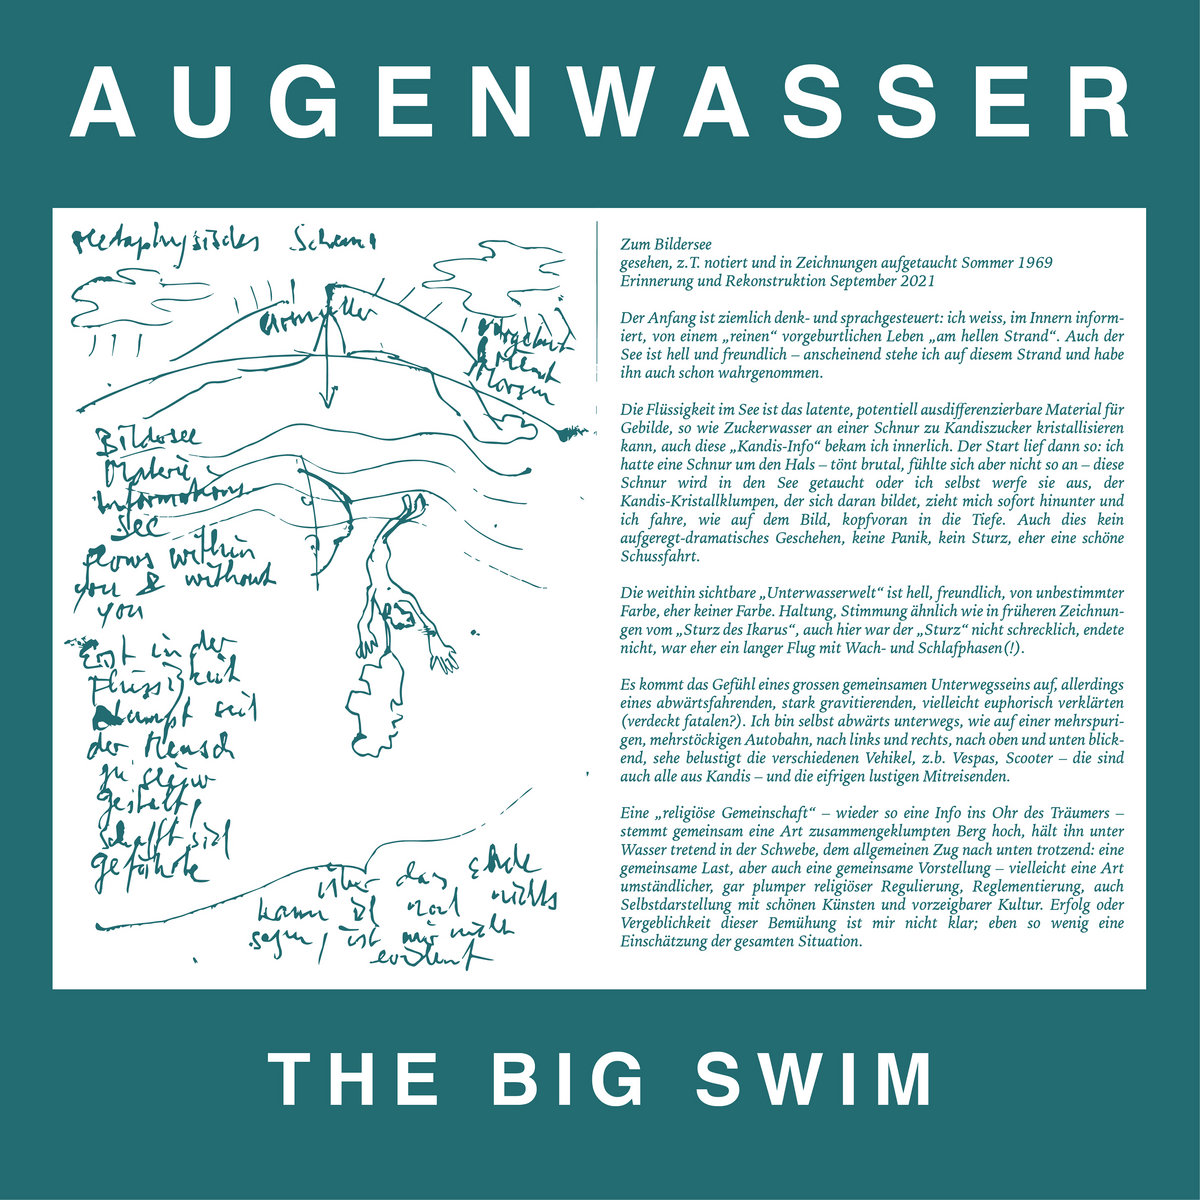 AUGENWASSER - THE BIG SWIM - LP - VINYL 33 TOURS DISQUE VINYLE LP PARIS MONTPELLIER GROUND ZERO PLATINE PRO-JECT ALBUM TOURNE-DISQUE MUSICAL FIDELITY KANTU YU BRINGHS ORTOFON 45 TOURS SINGLES ALBUM ACHETER UNE PLATINE VINYLS BOUTIQUE PHYSIQUE DISQUAIRE MAGASIN CENTRE VILLE INDES INDIE RECORD STORE INDEPENDENT INDEPENDANT